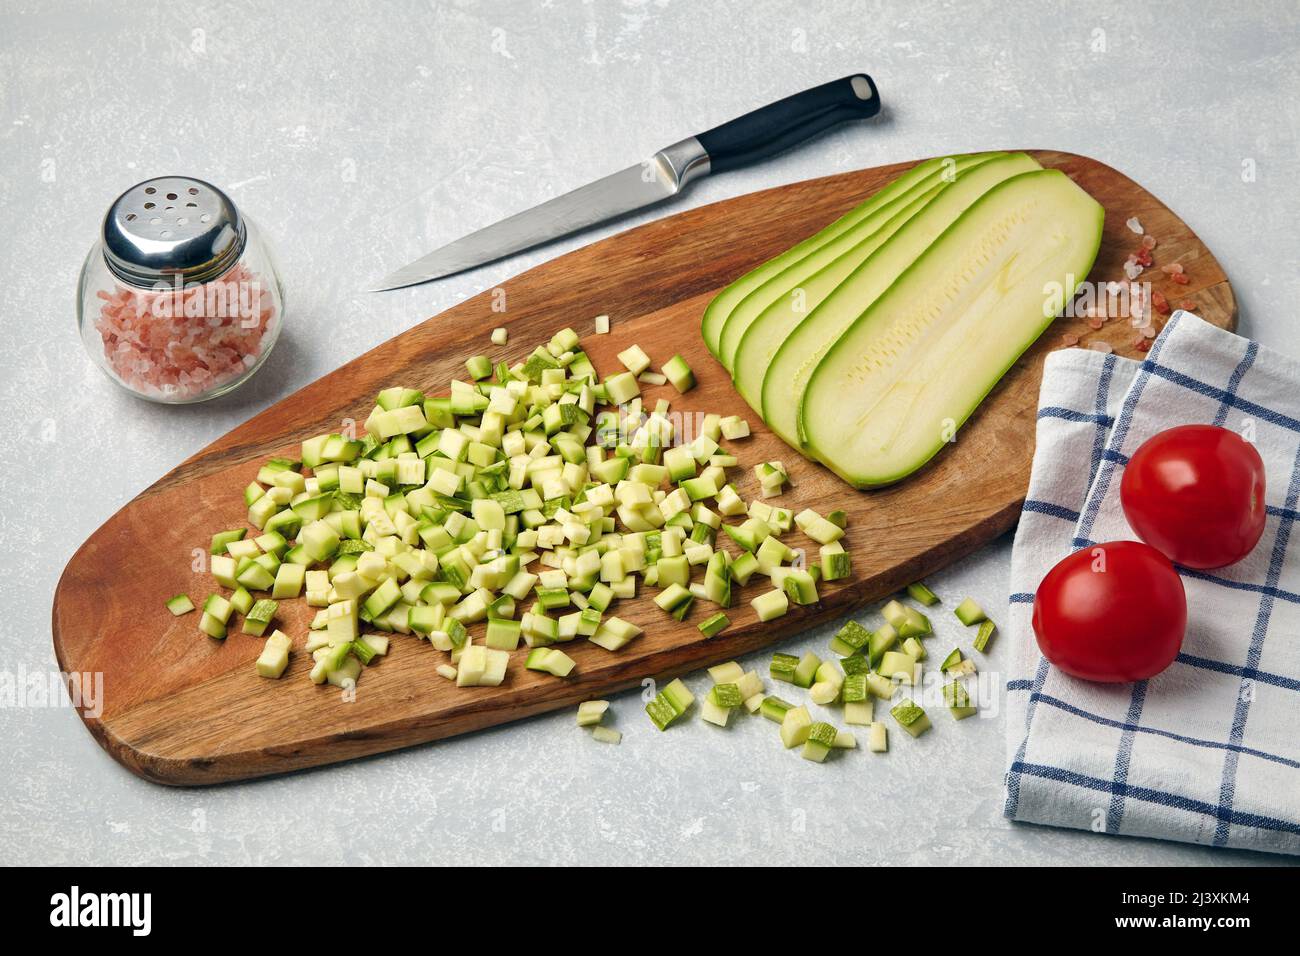 Affettato le verdure della zucchina su un tagliere di legno, pomodori, aglio, sale rosa e tovagliolo su un tavolo chiaro di cemento Foto Stock